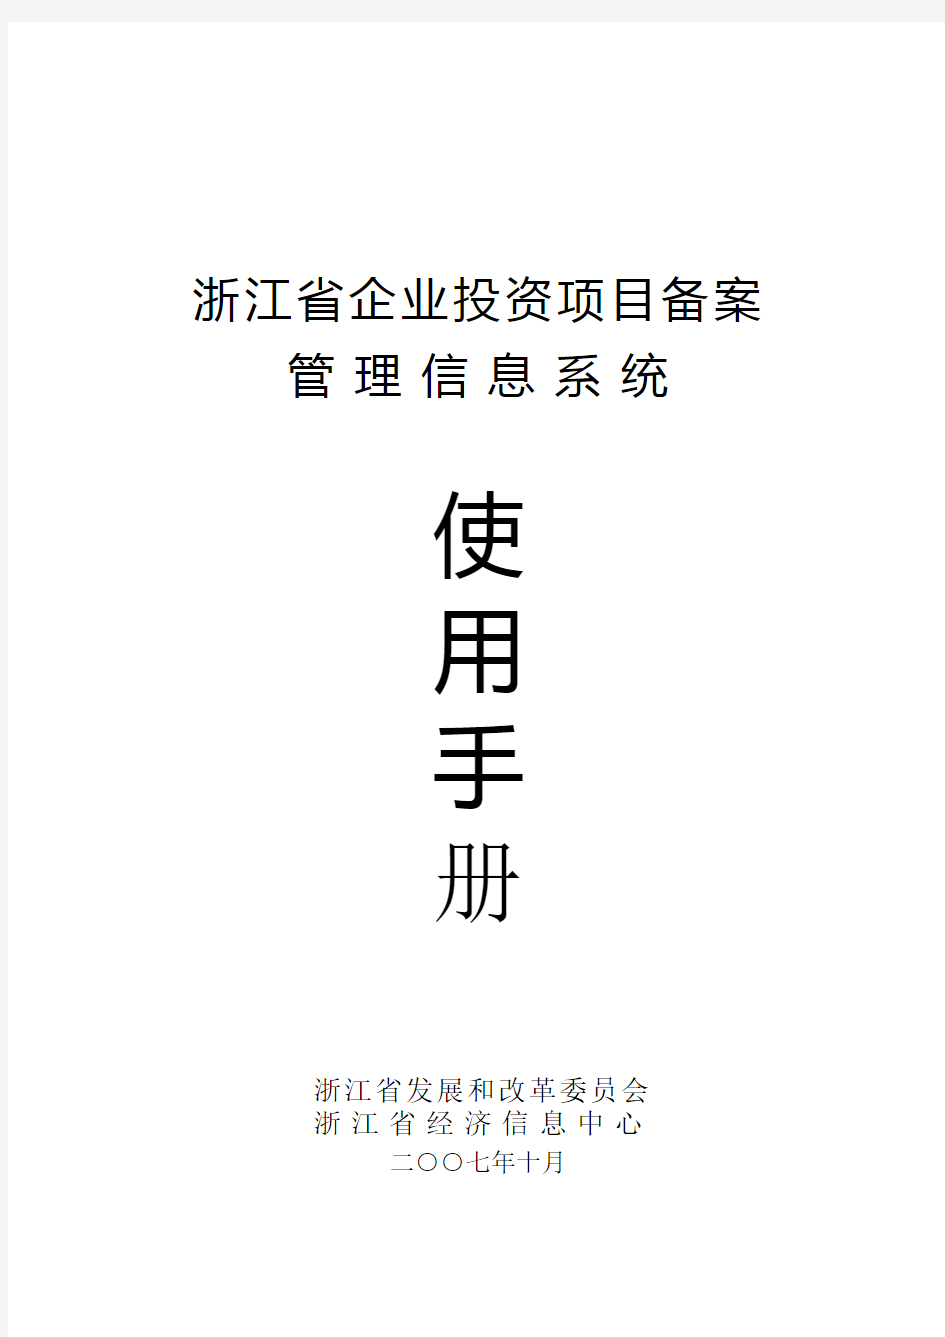 浙江省企业投资项目备案信息管理系统使用手册